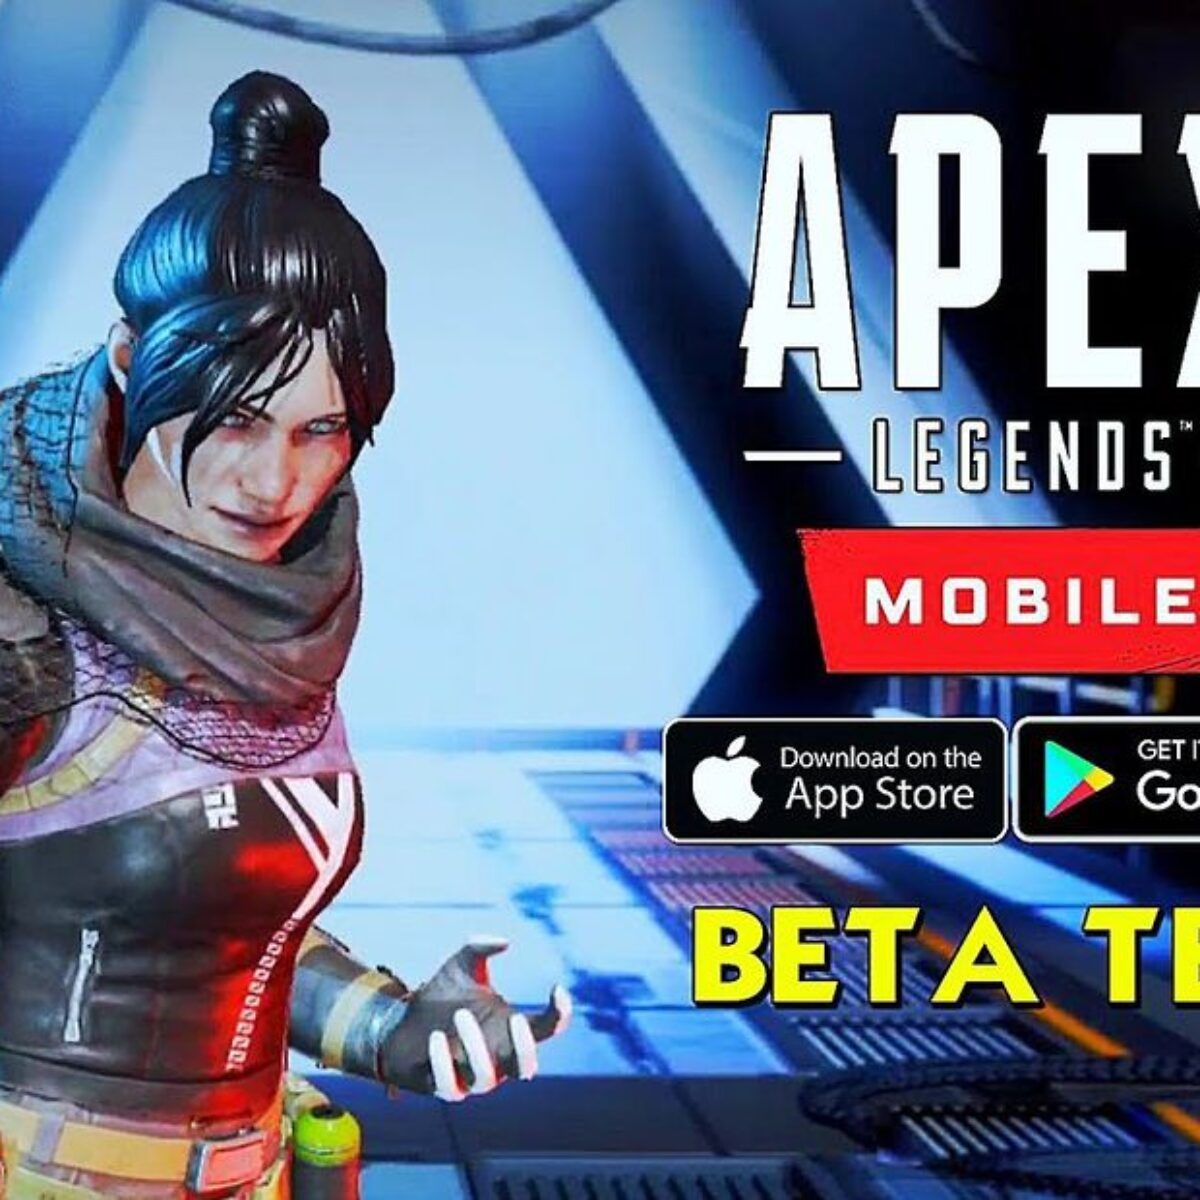 Apex legends mobile 下载